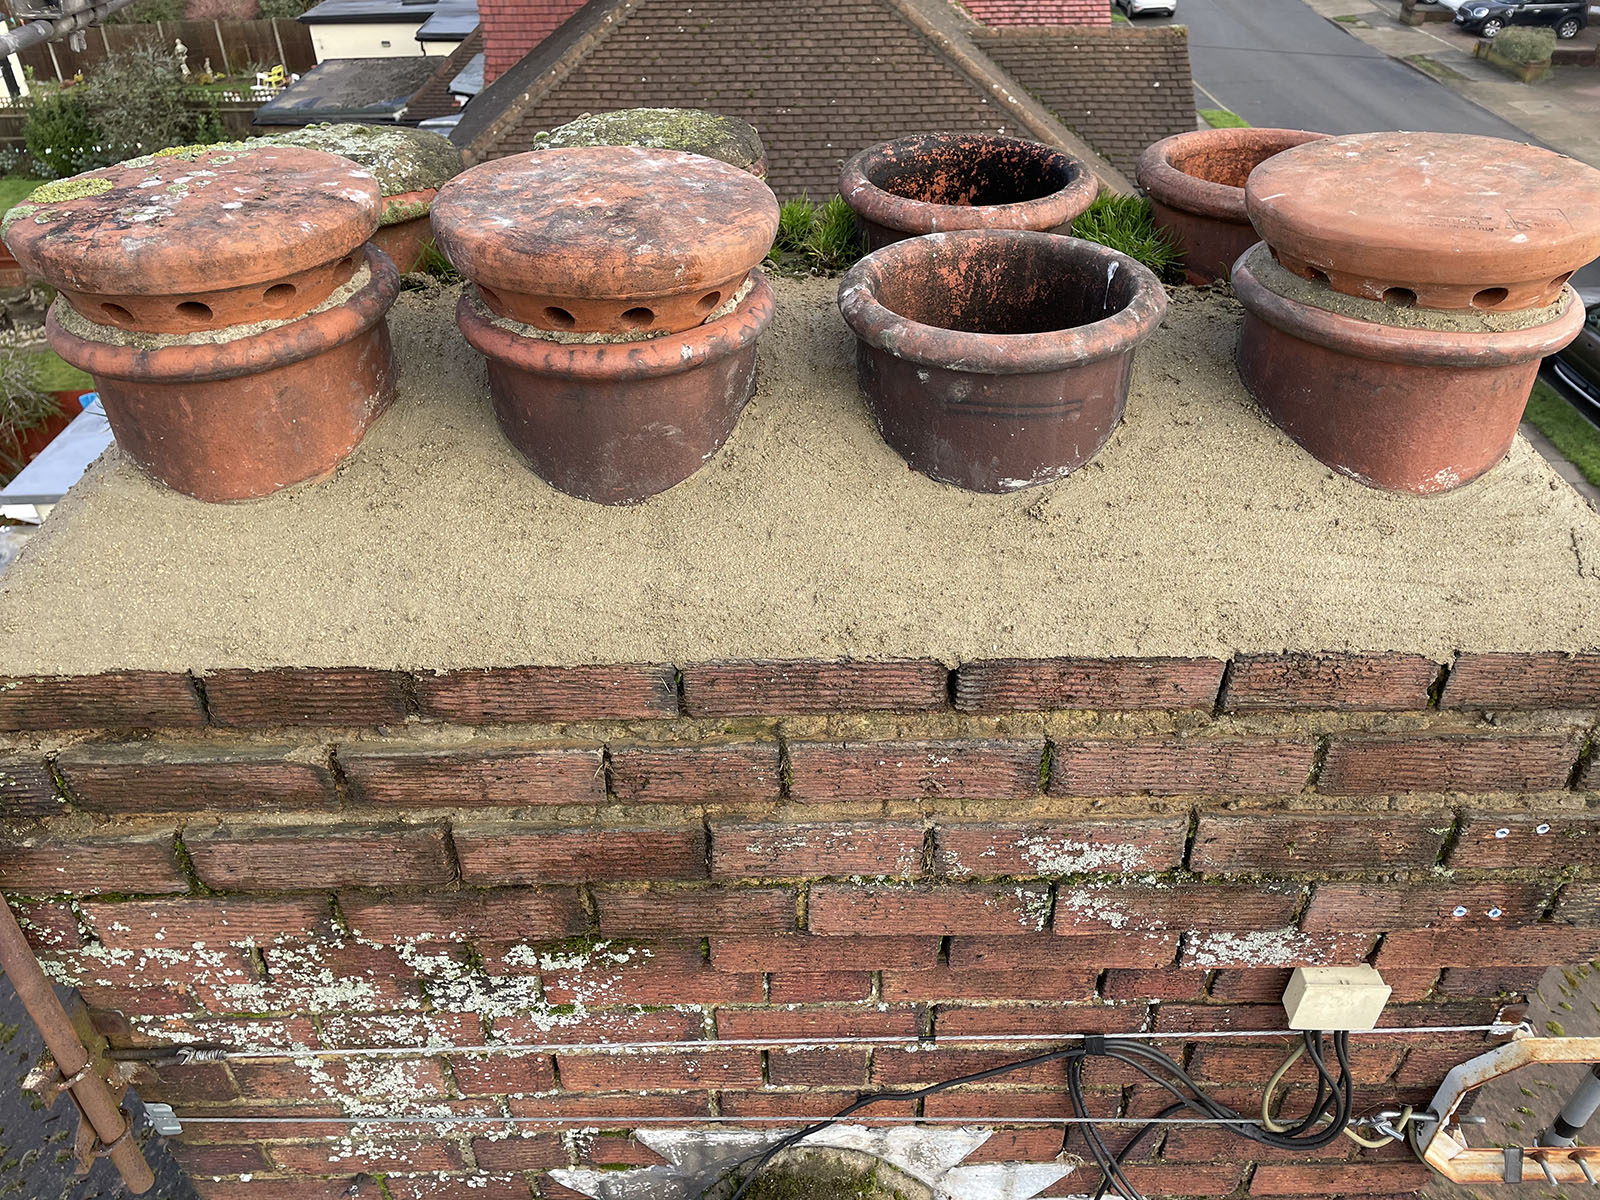 chimney cement work around pots.